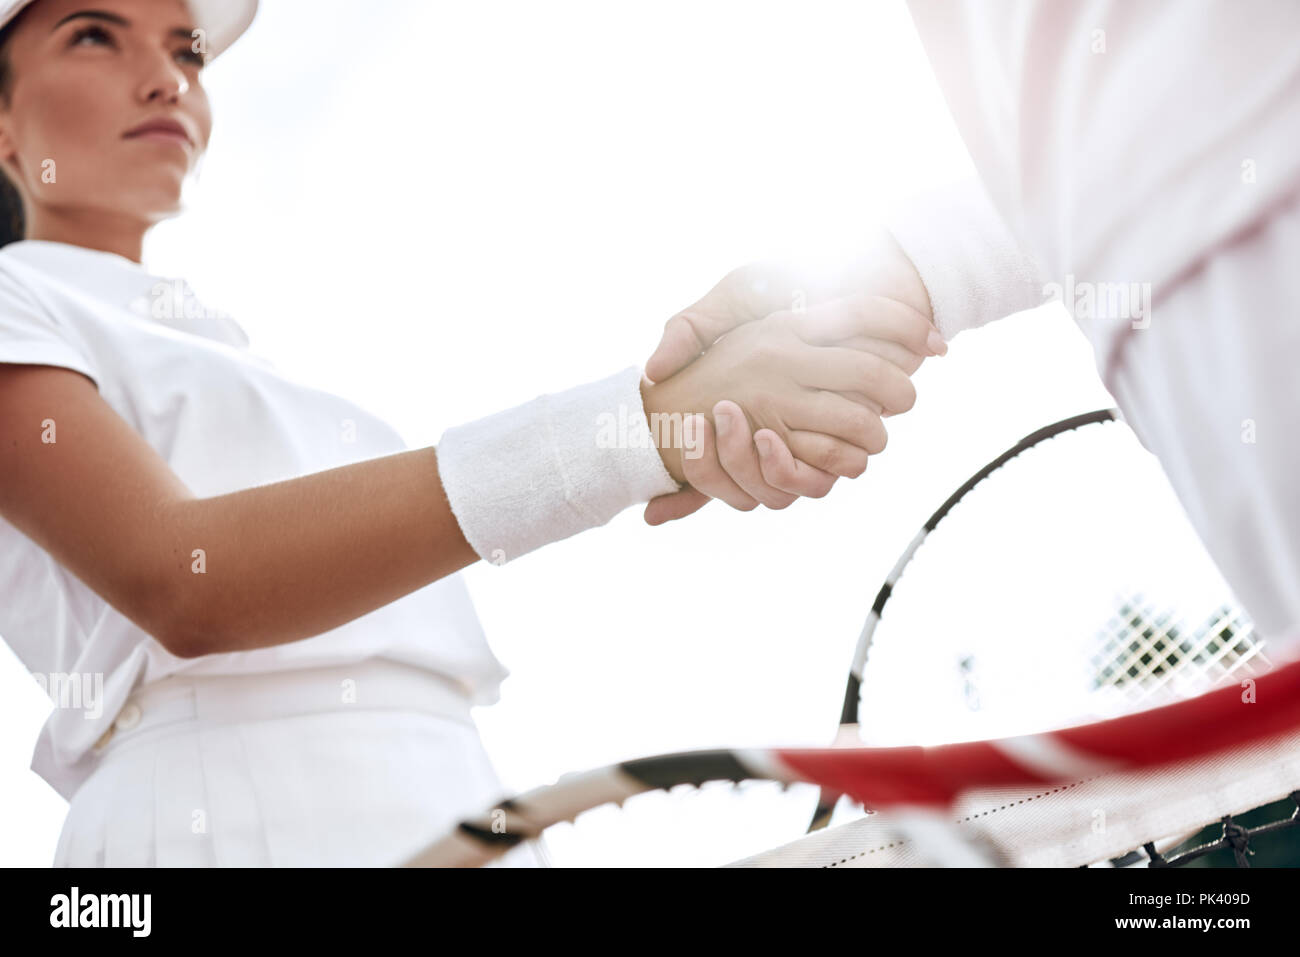 Se serrer la main après un bon jeu. Close-up de l'homme et de la femme en serrant la main bracelet sur le filet de tennis Banque D'Images